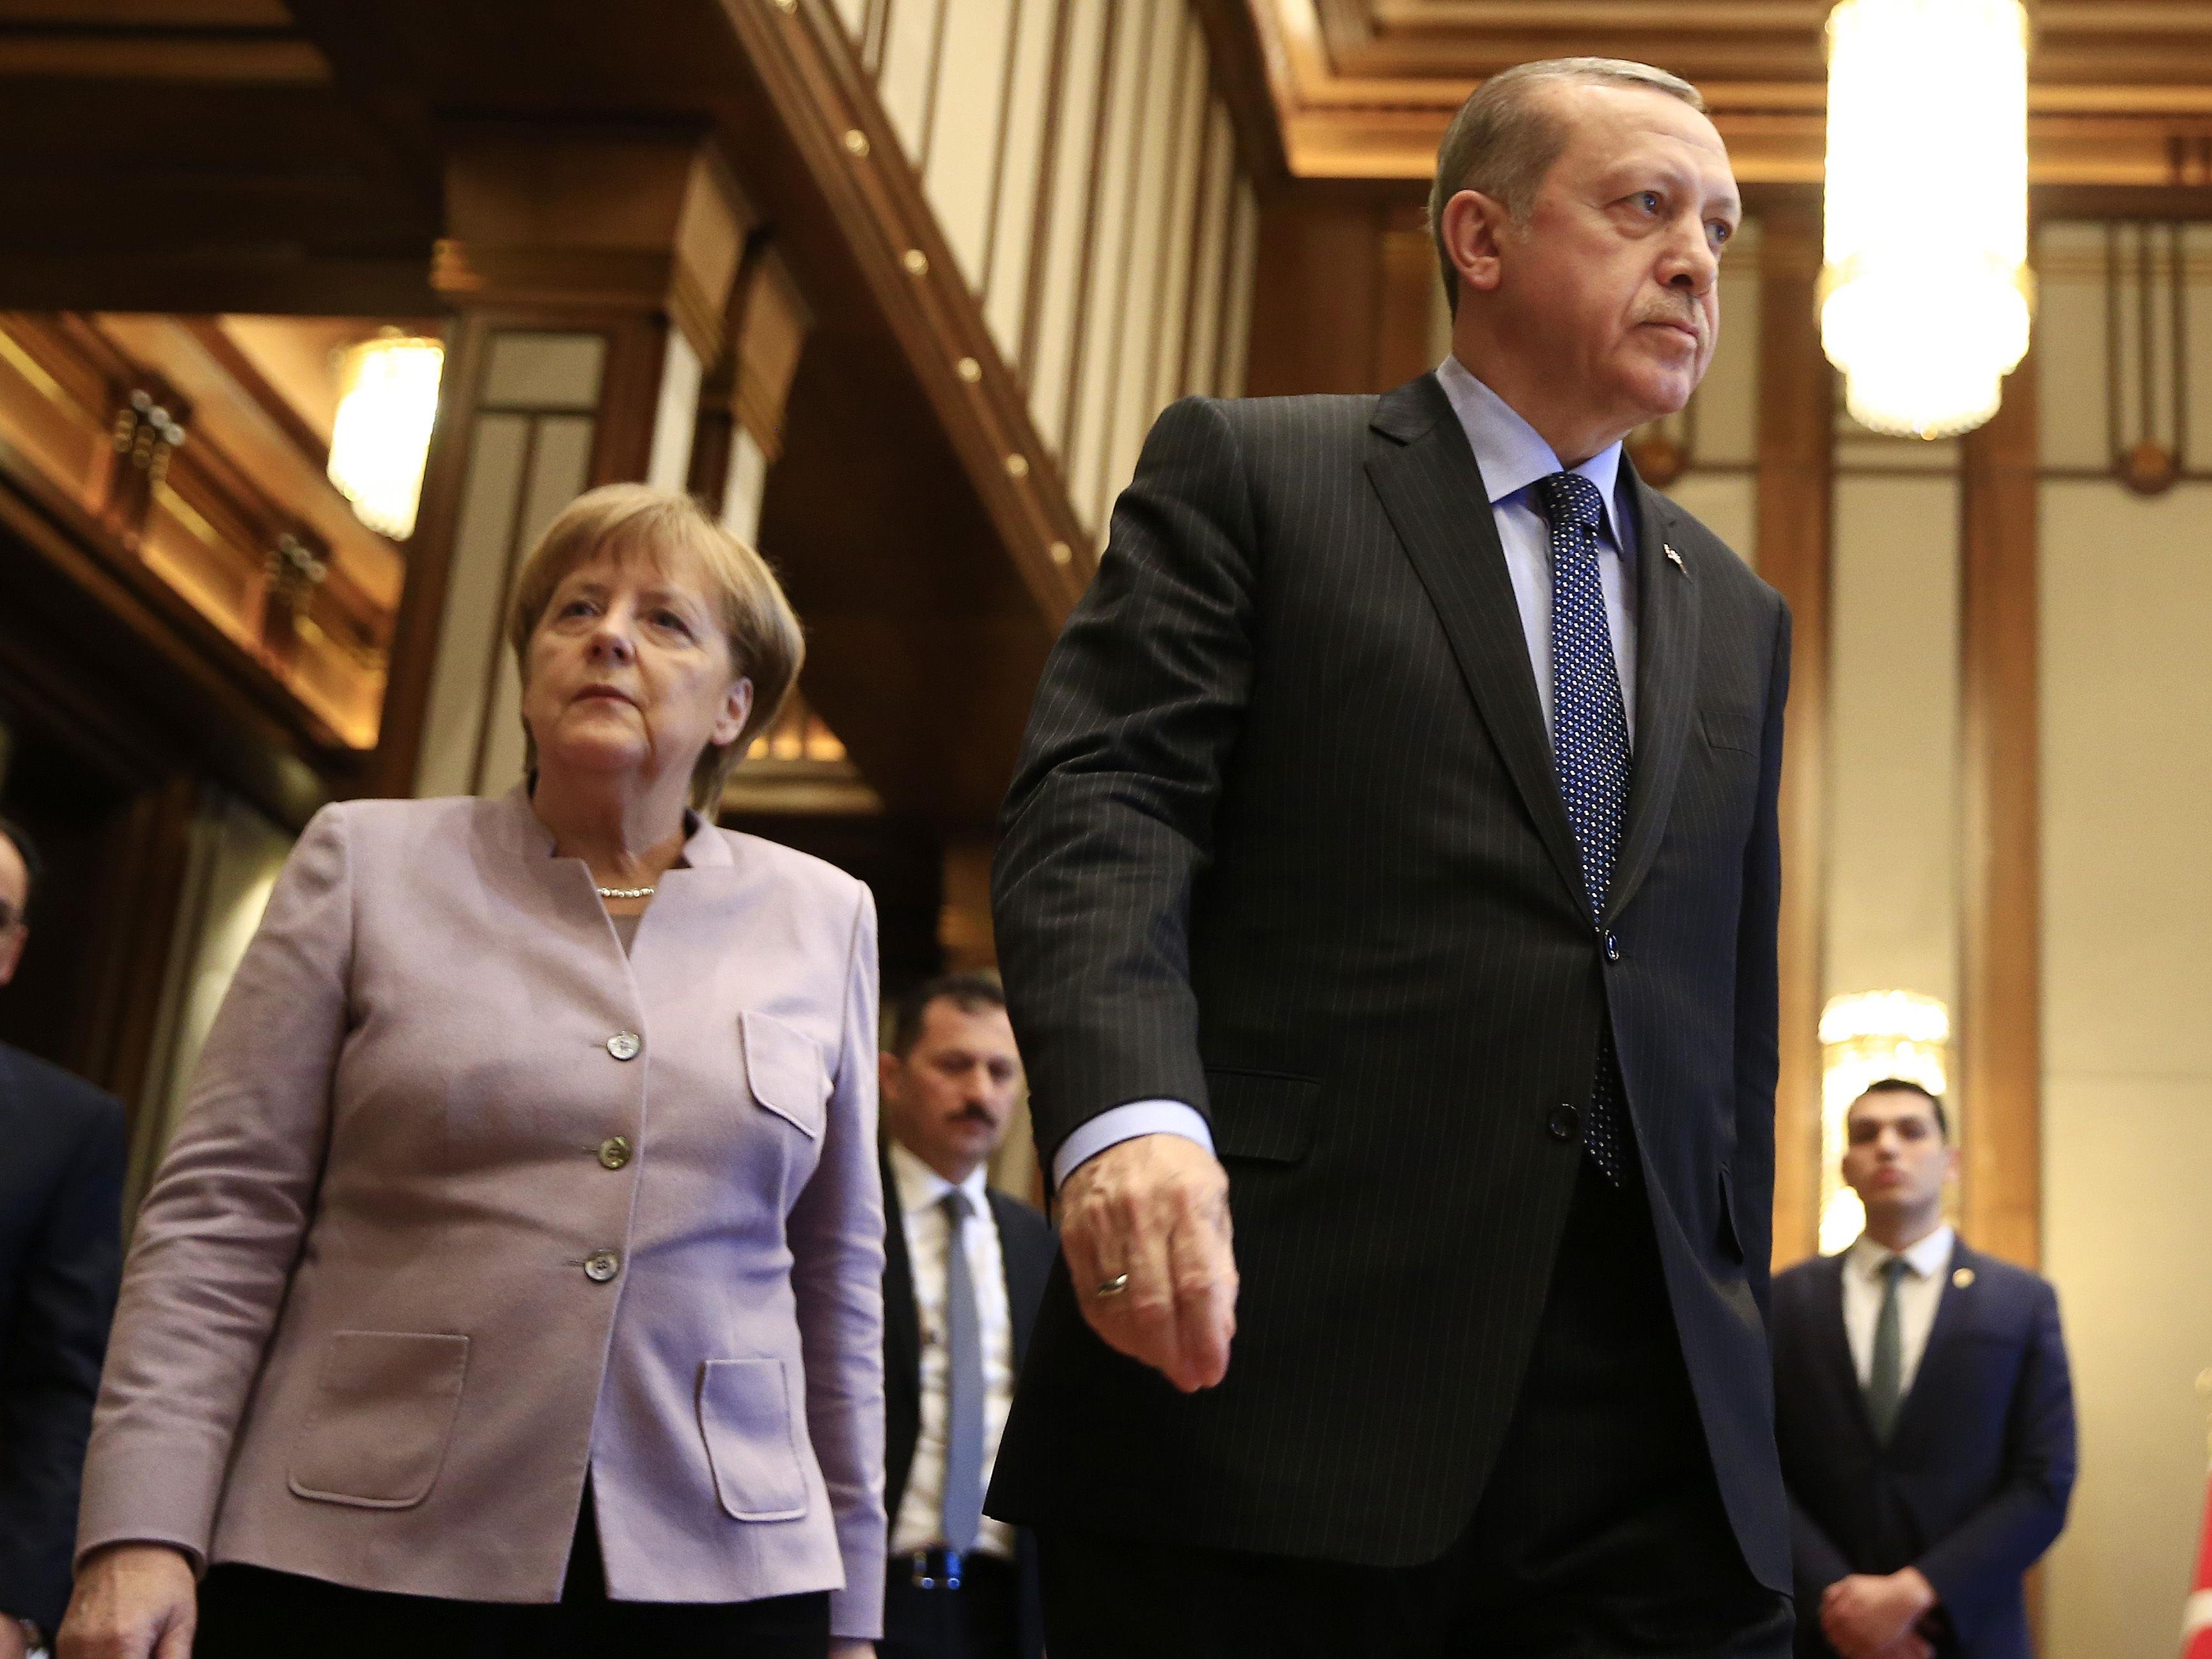 Zu Wochenbeginn hatte Präsident Recep Tayyip Erdogan die deutsche Bundeskanzlerin Angela Merkel direkt persönlich angegriffen und ihr vorgeworfen, Terroristen zu unterstützen.